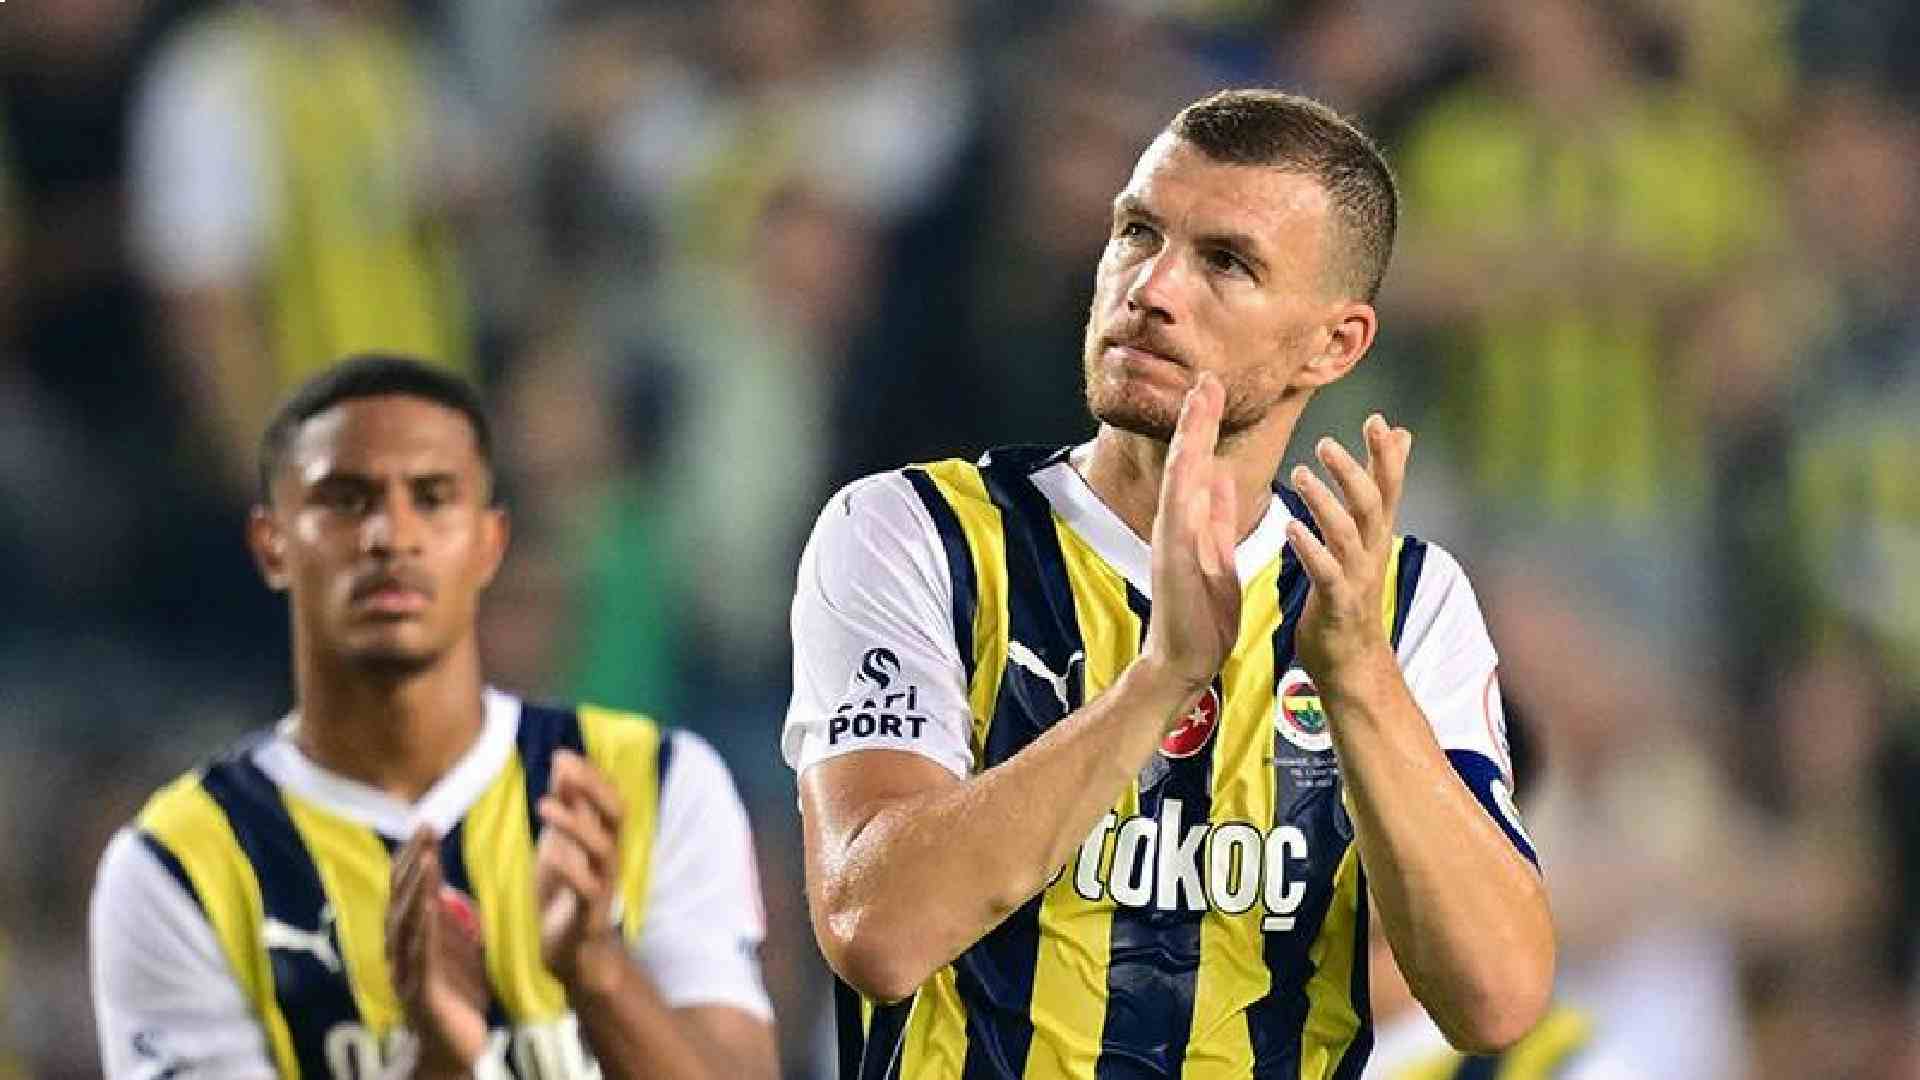 Clamoroso in Turchia: il Fenerbahçe valuta l'addio al campionato e il trasferimento in Spagna o Francia